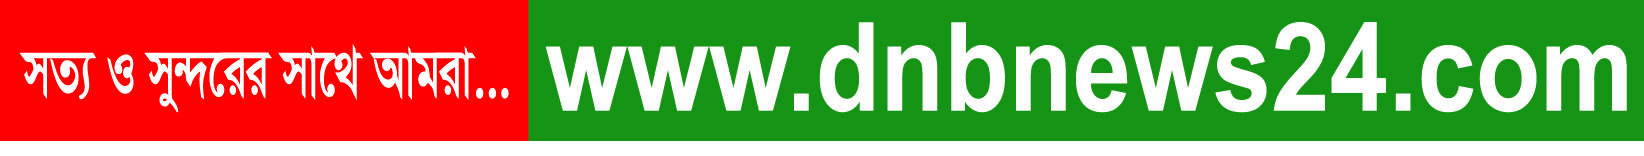 DNBNEWS24.COM